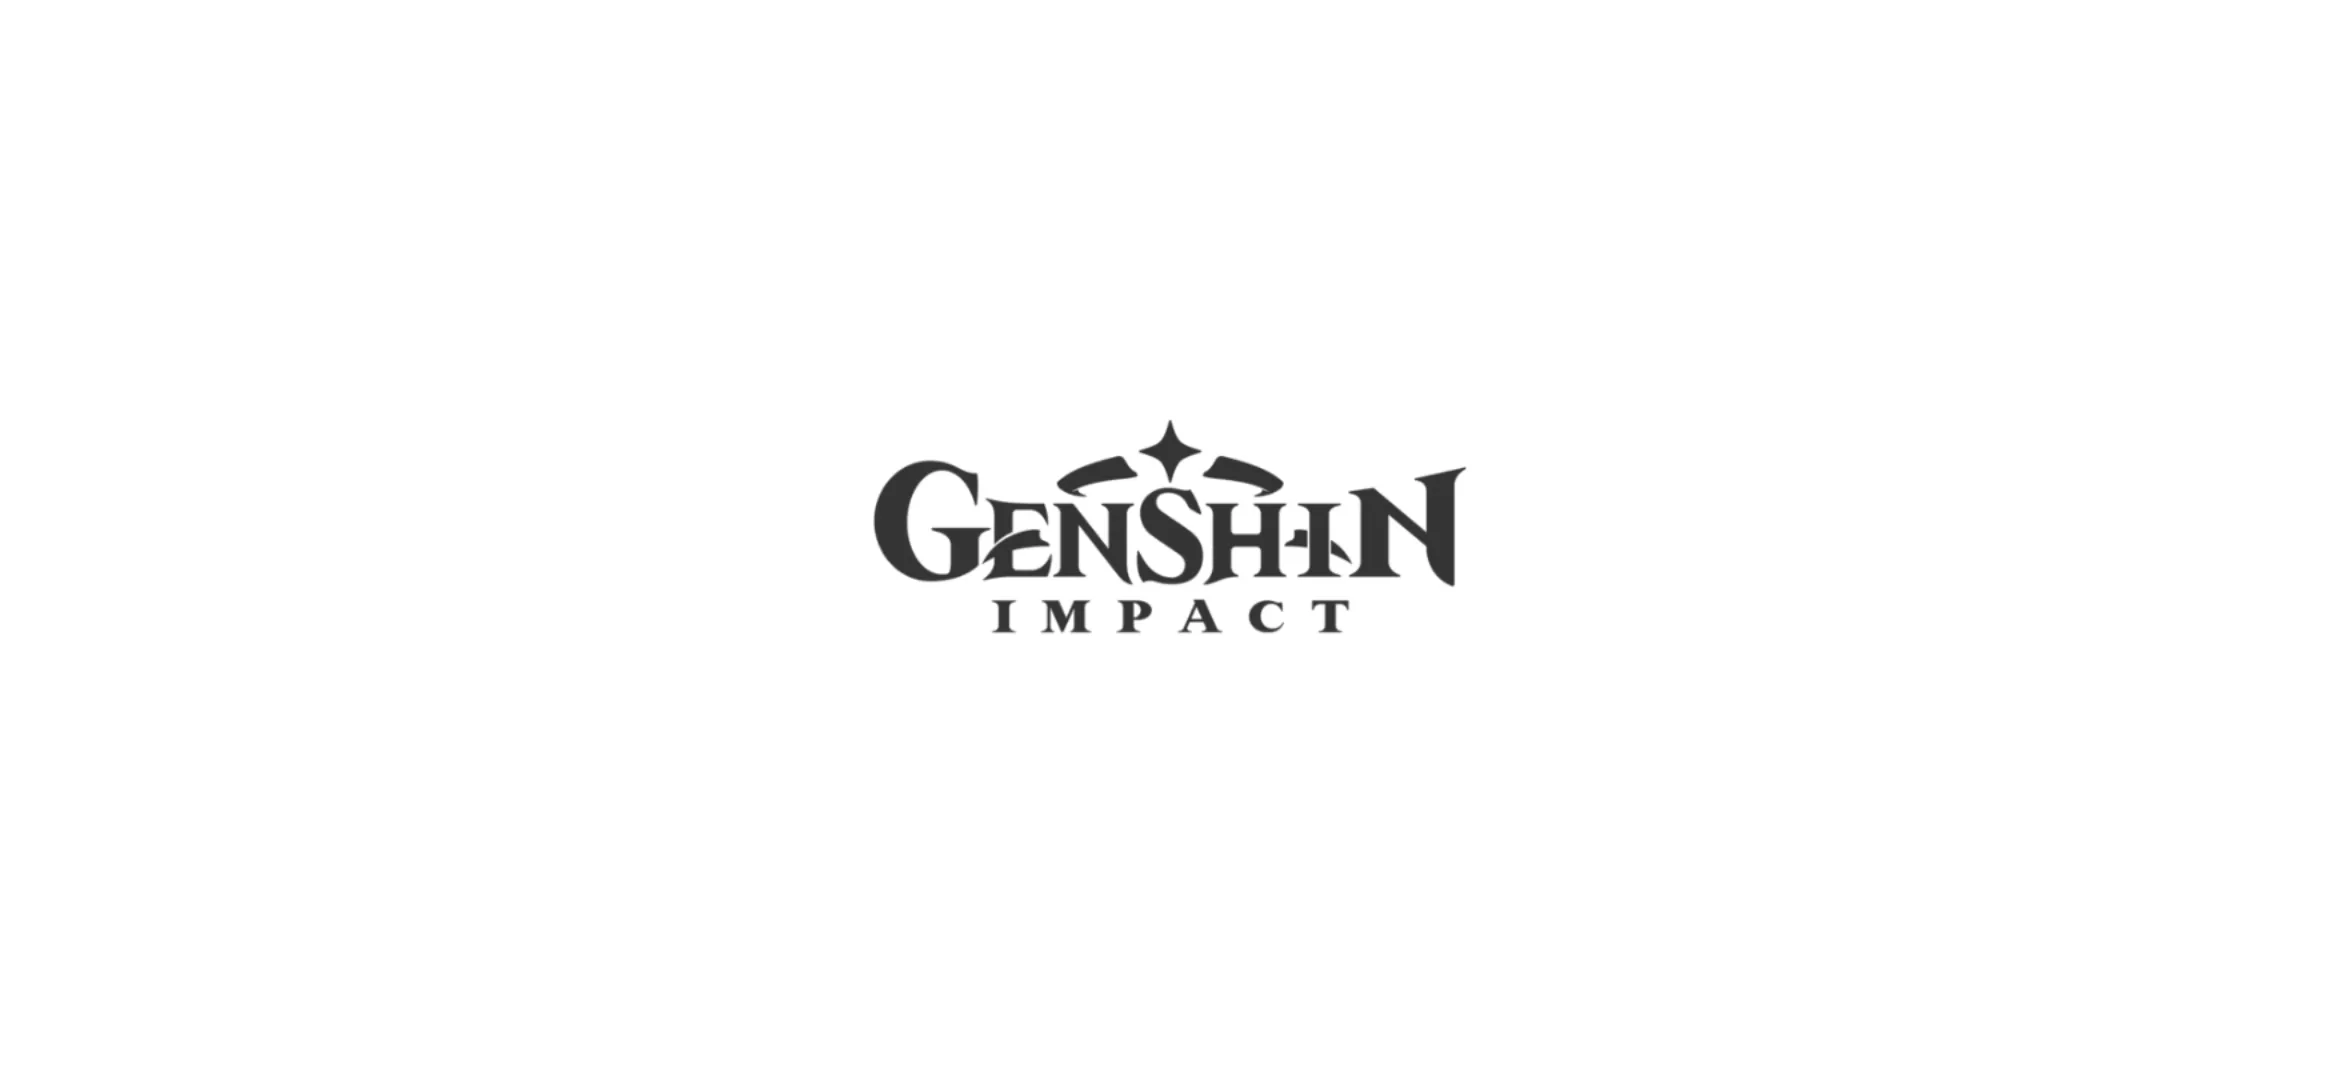 Гадальные бирки геншин. Веласкес портрет инфанты. Михойо Геншин. Геншин лого. Логотип ген шин Импакт.